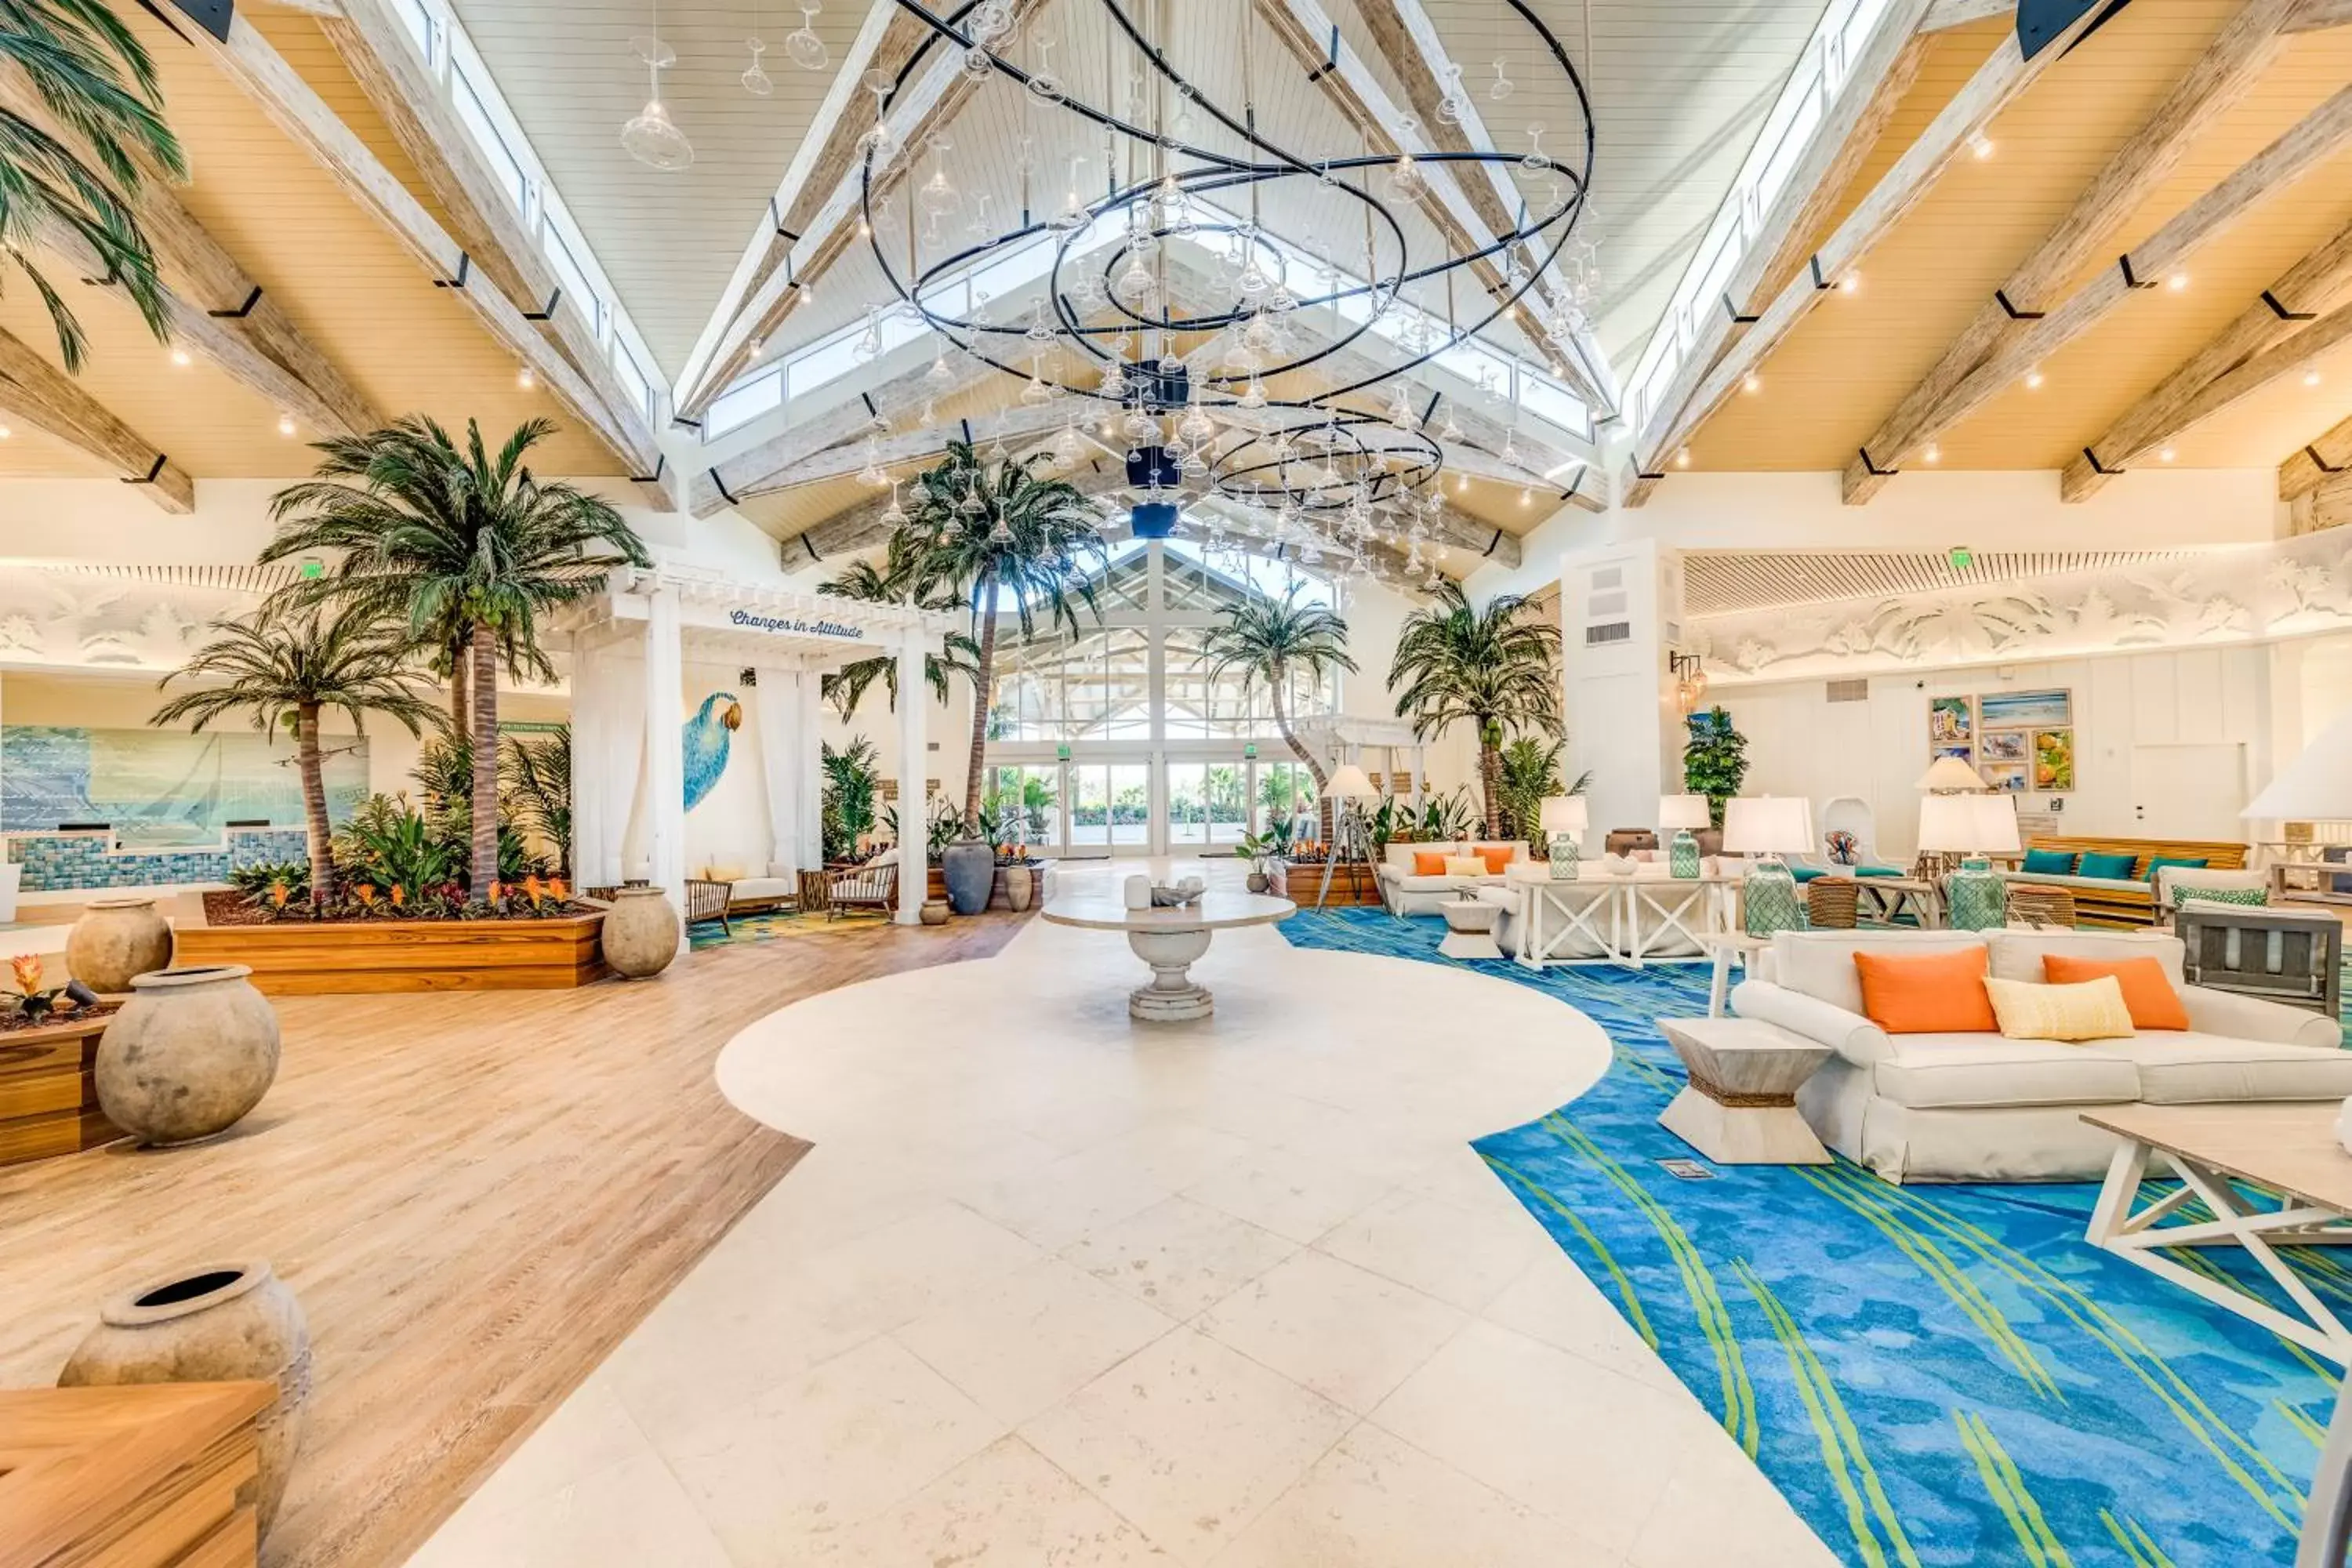 Lobby or reception in Margaritaville Resort Orlando